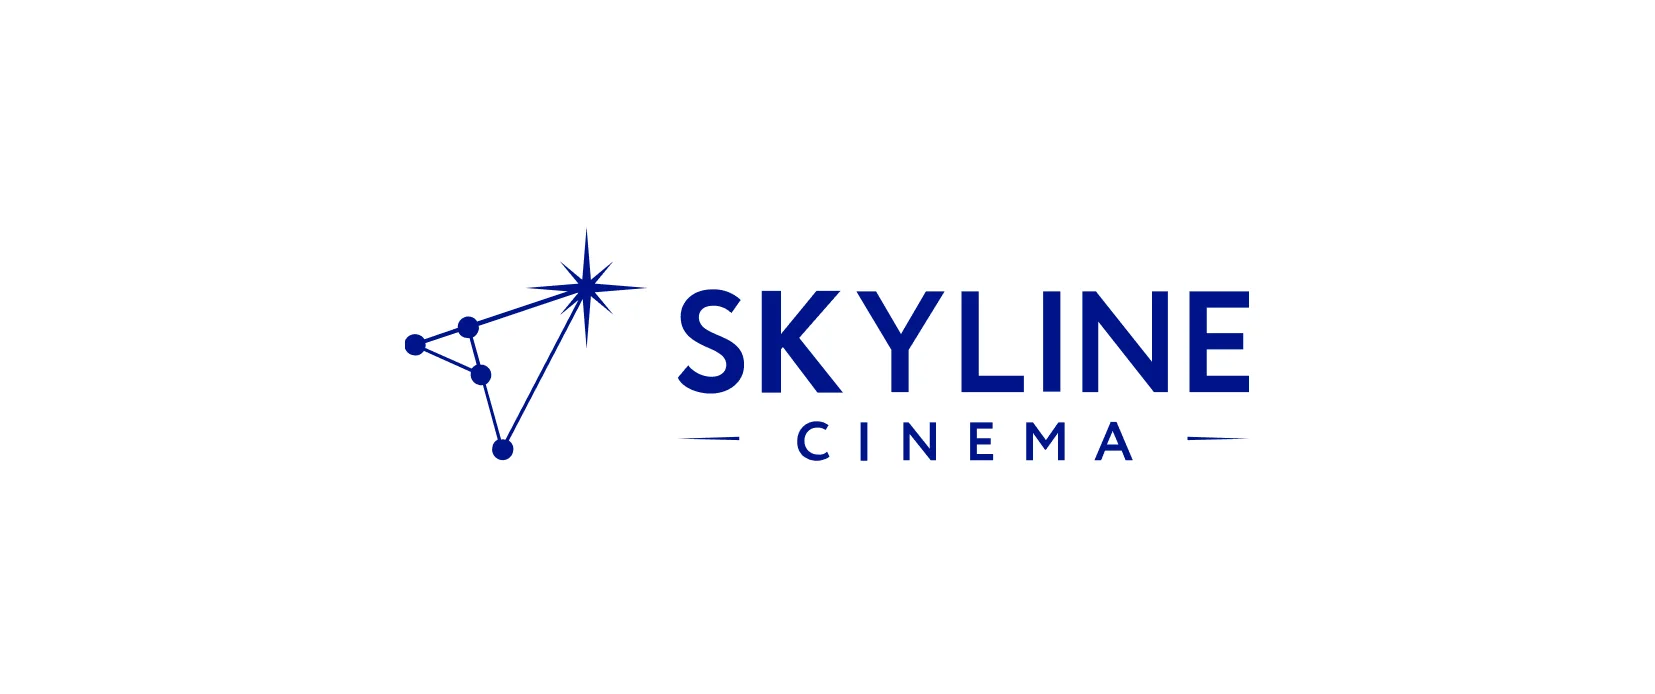 SKYLINE Cinema - сеть кинотеатров